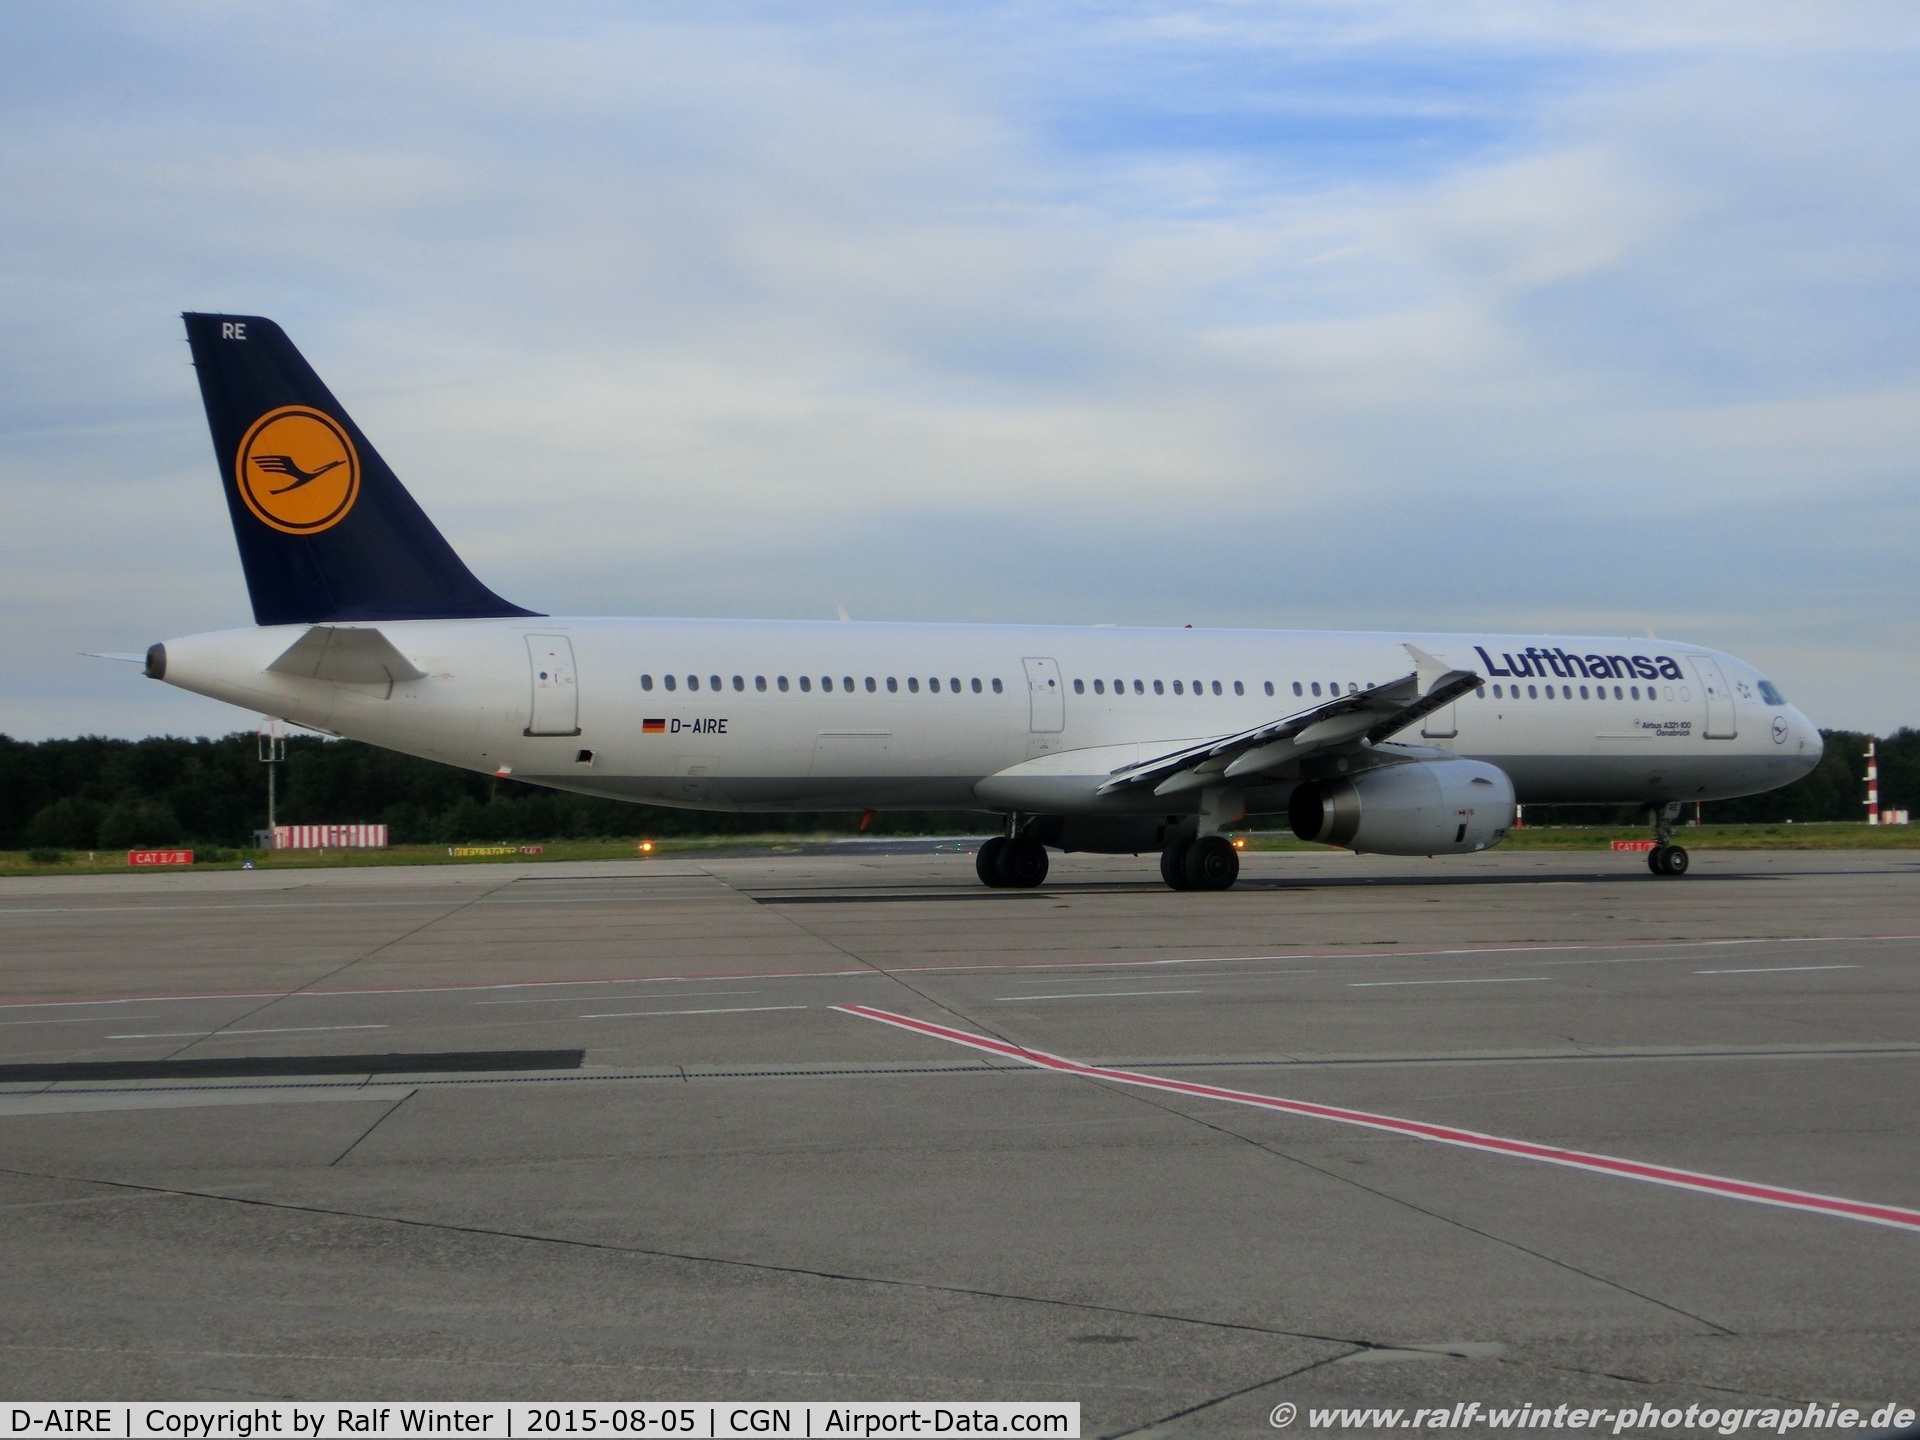 D-AIRE, 1994 Airbus A321-131 C/N 0484, Airbus A321-131 - LH DLH Lufthansa 'Osnabrueck' - 484 - D-AIRE - 05.08.2015 - CGN